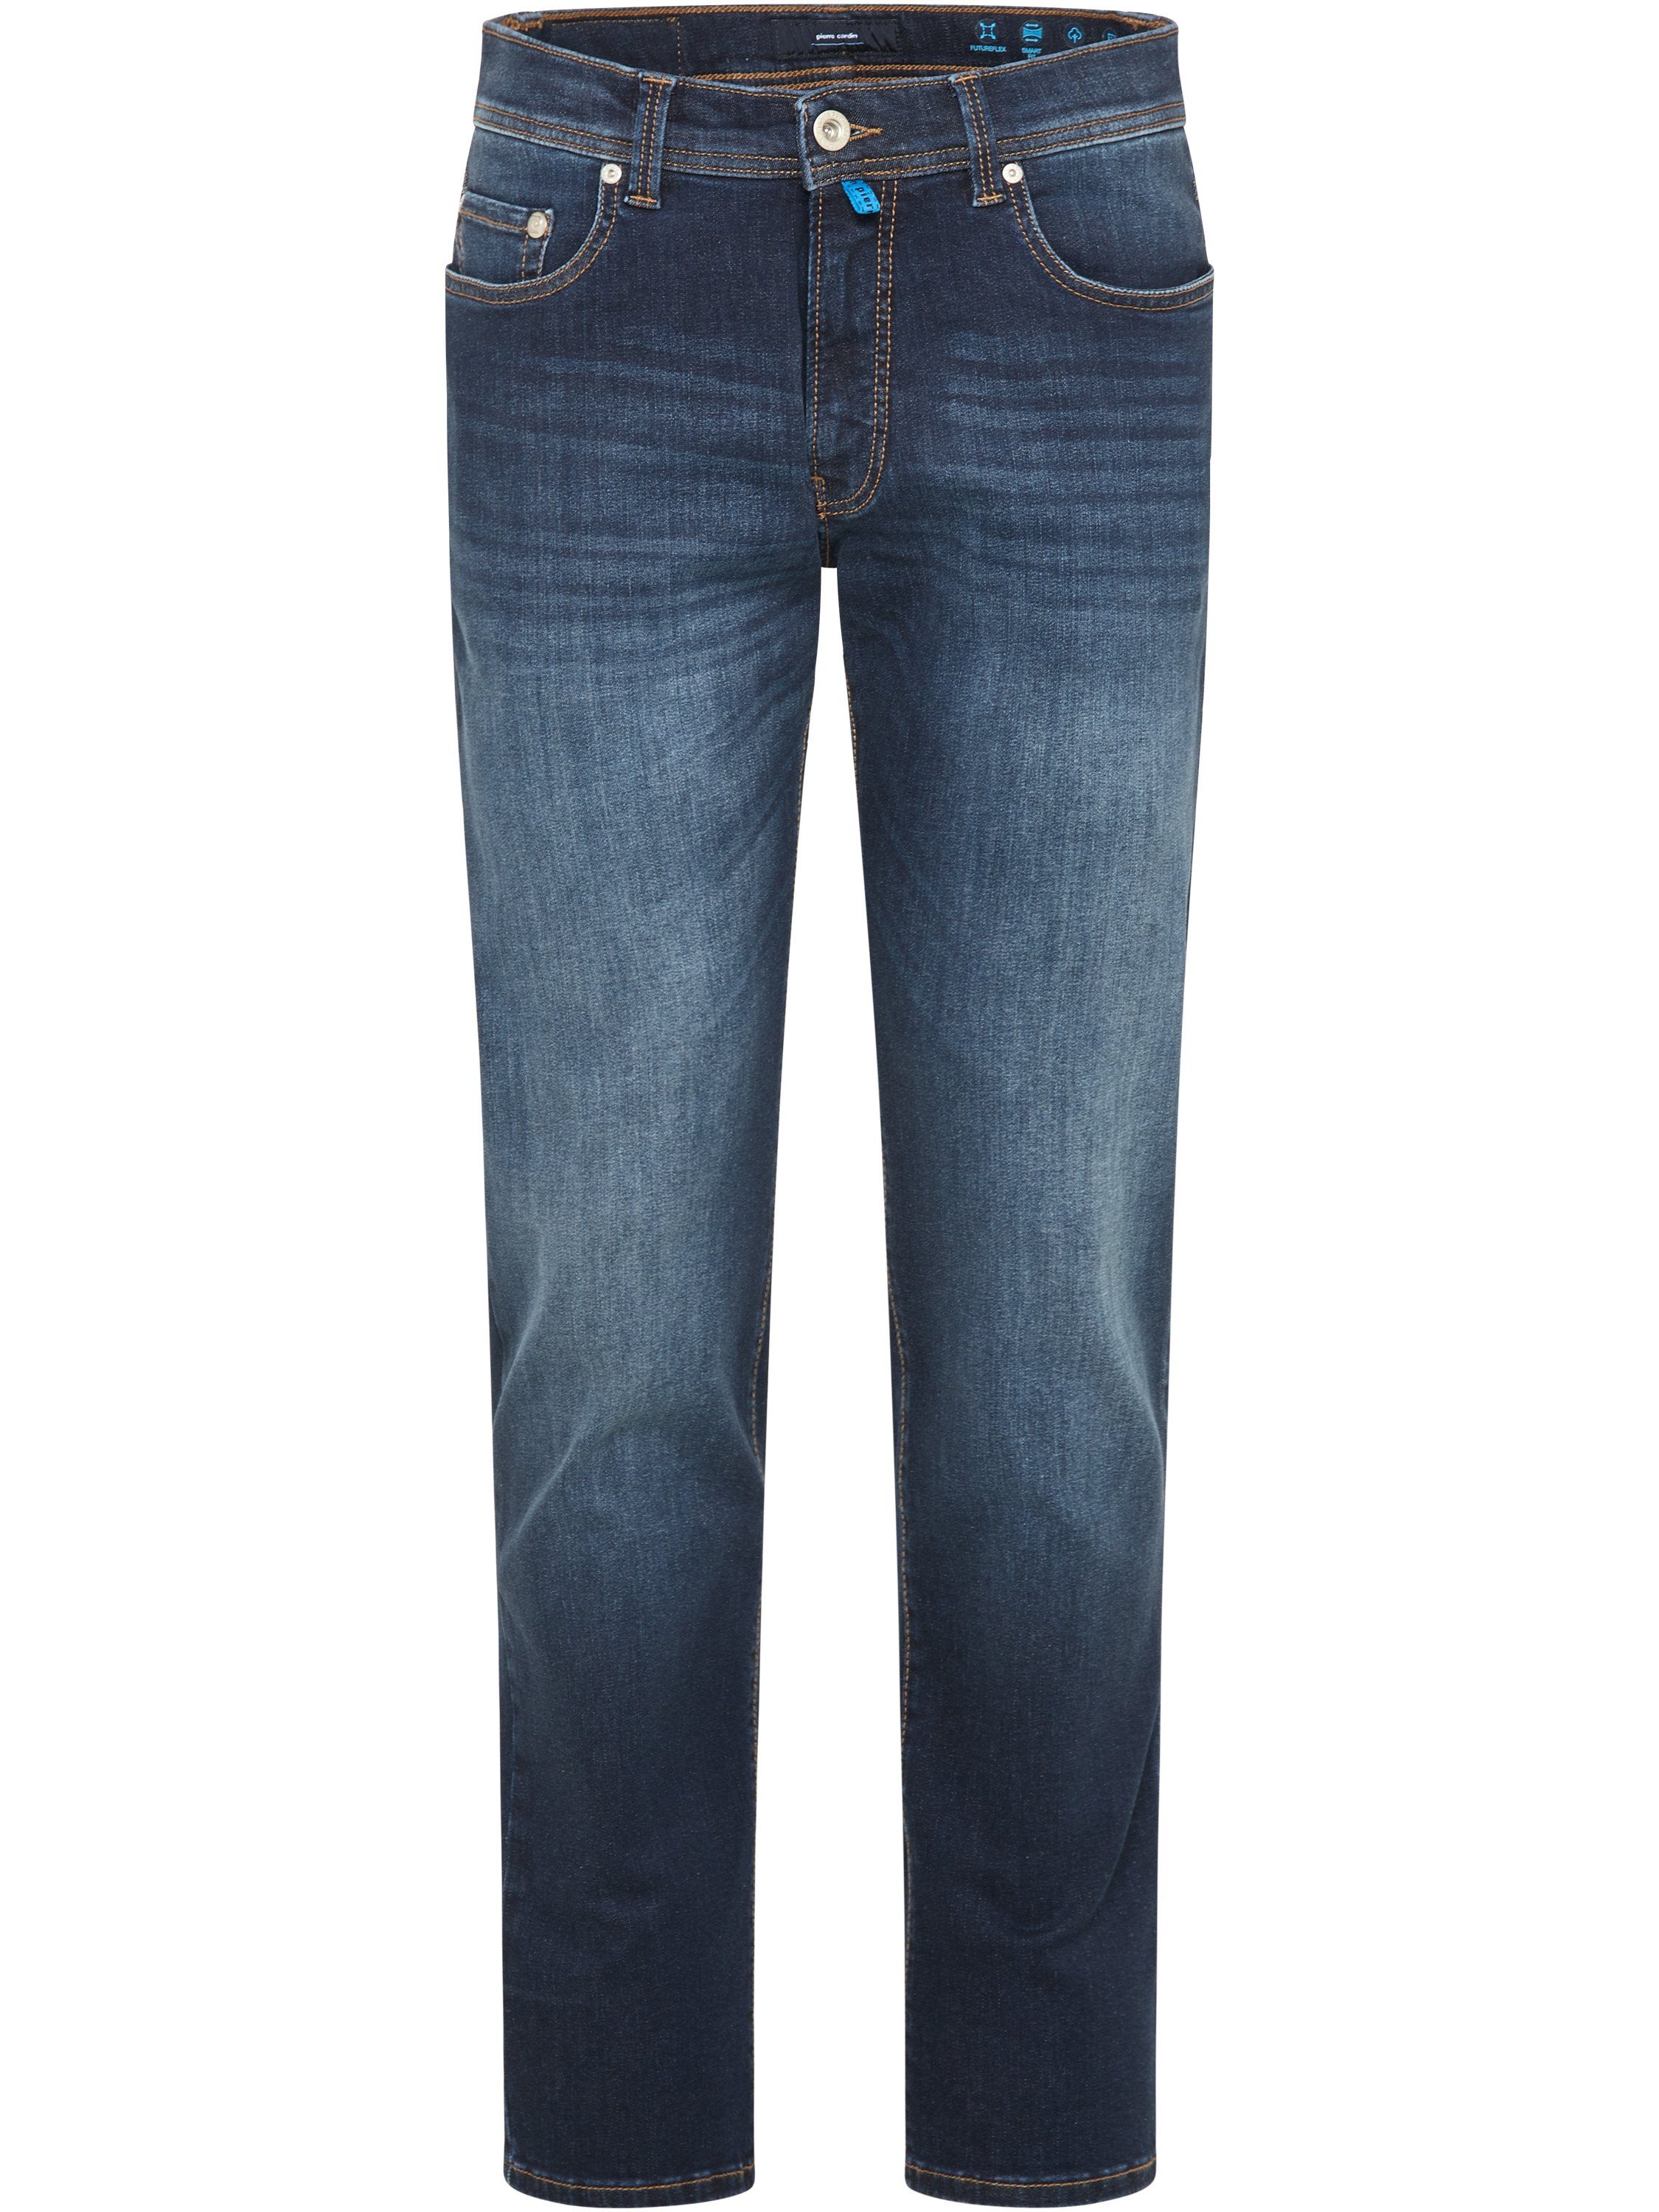 Pierre Cardin 5-Pocket-Jeans PIERRE CARDIN FUTUREFLEX LYON dark denim buffies 3451 8820.01